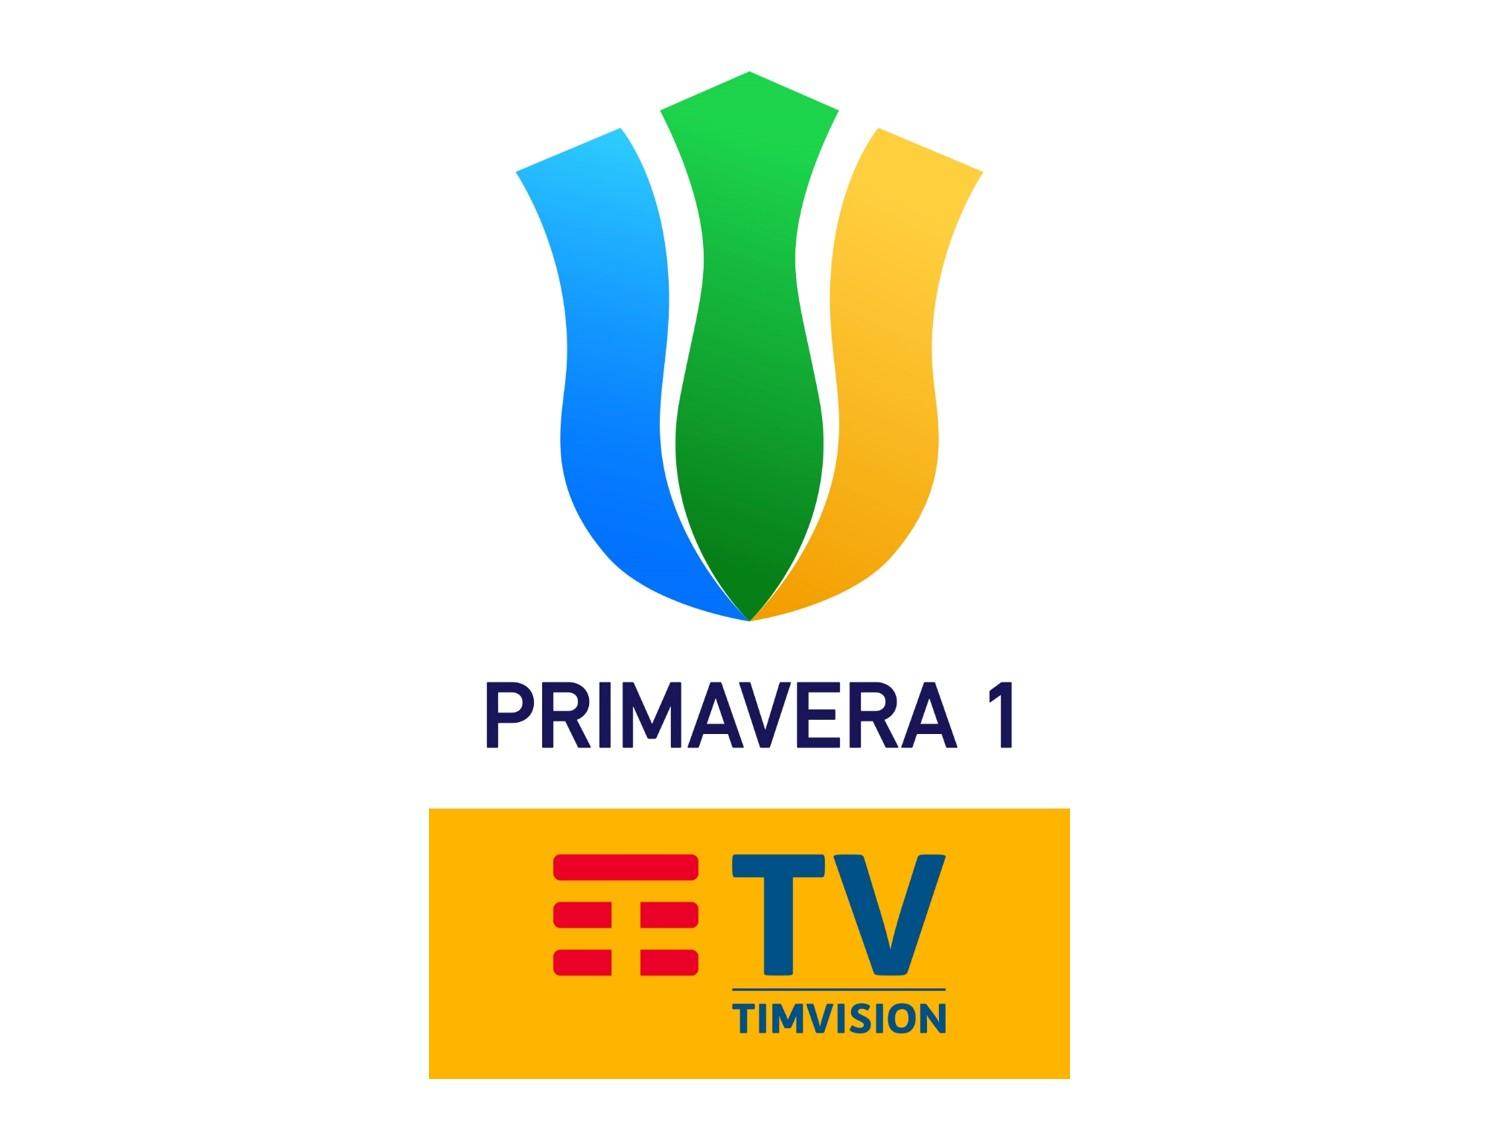 Sportitalia Campionato Primavera 1 TimVision - Programma 23a Giornata e Telecronisti